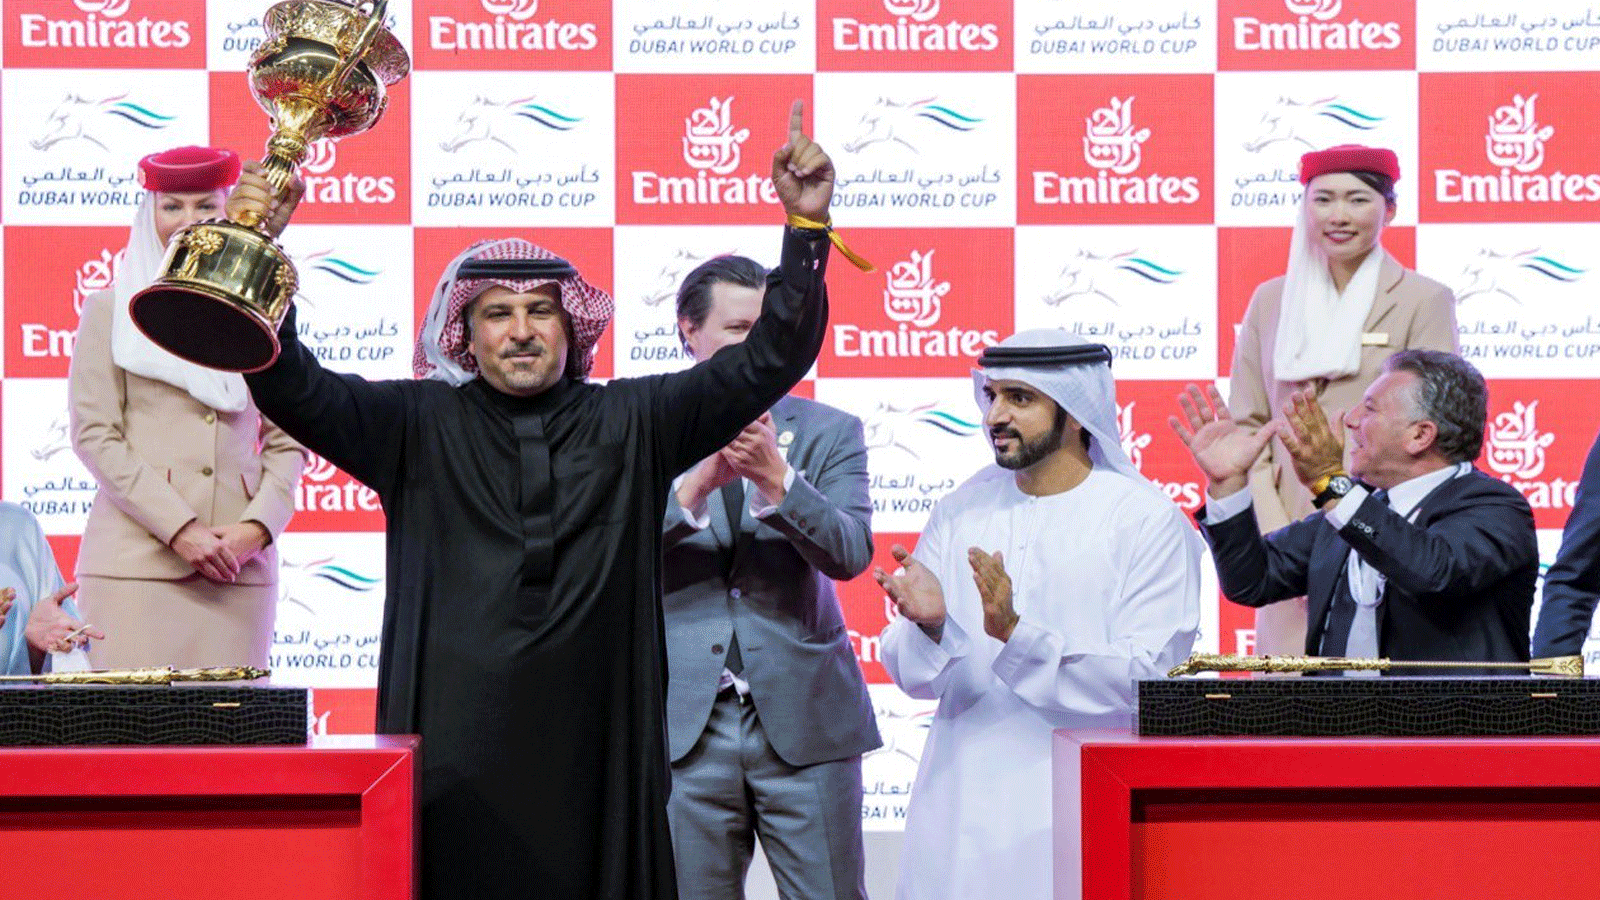  فوز جواد المملكة العربية السعودية Country Grammer لمالكه عمر زيدان بالنسخة 26 من كأس دبي العالمي 